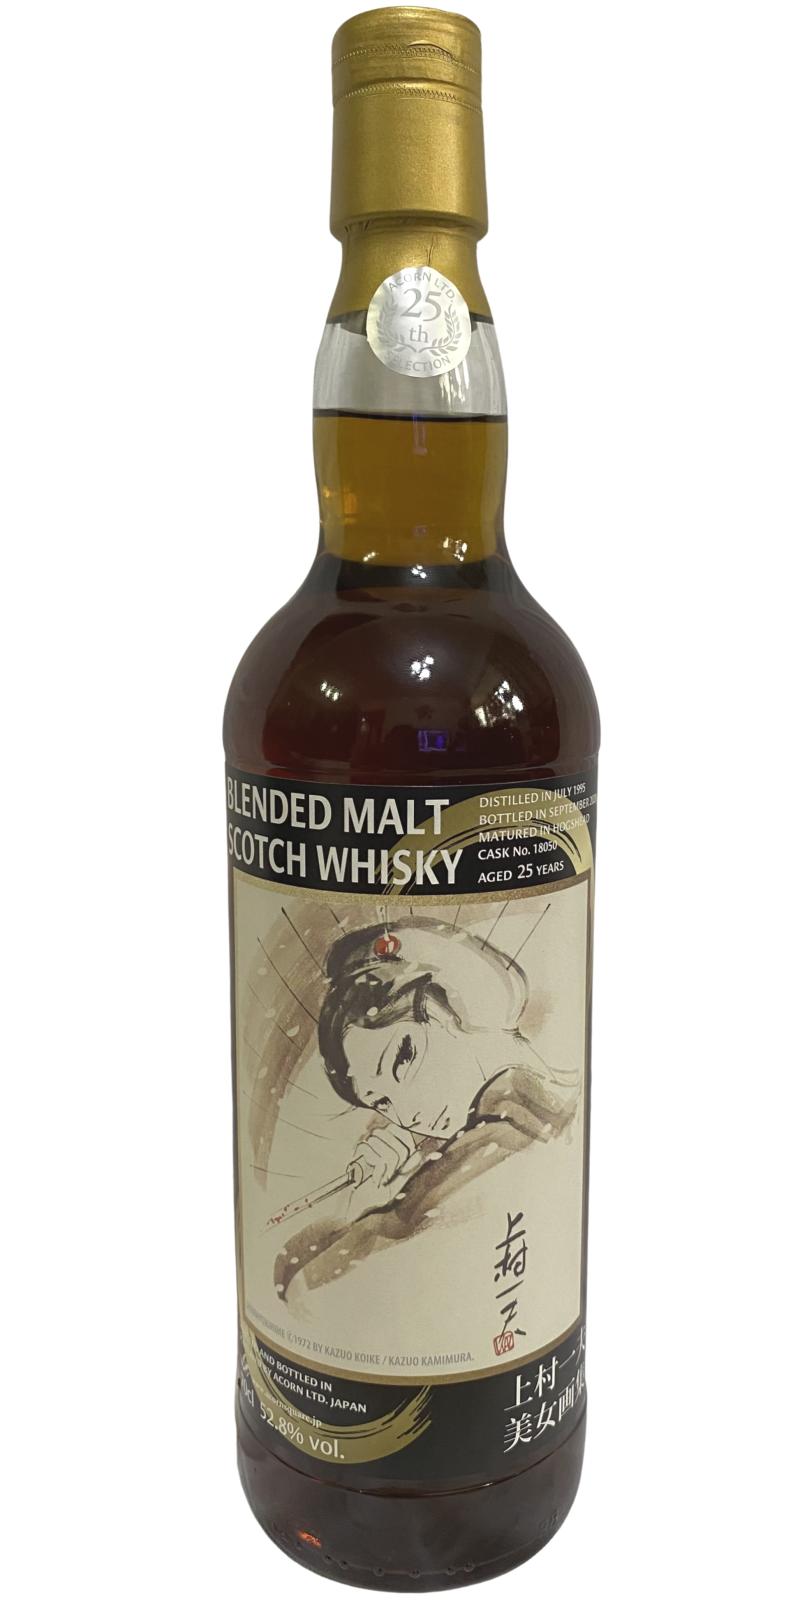 Blended Malt Scotch Whisky 1995 Ac